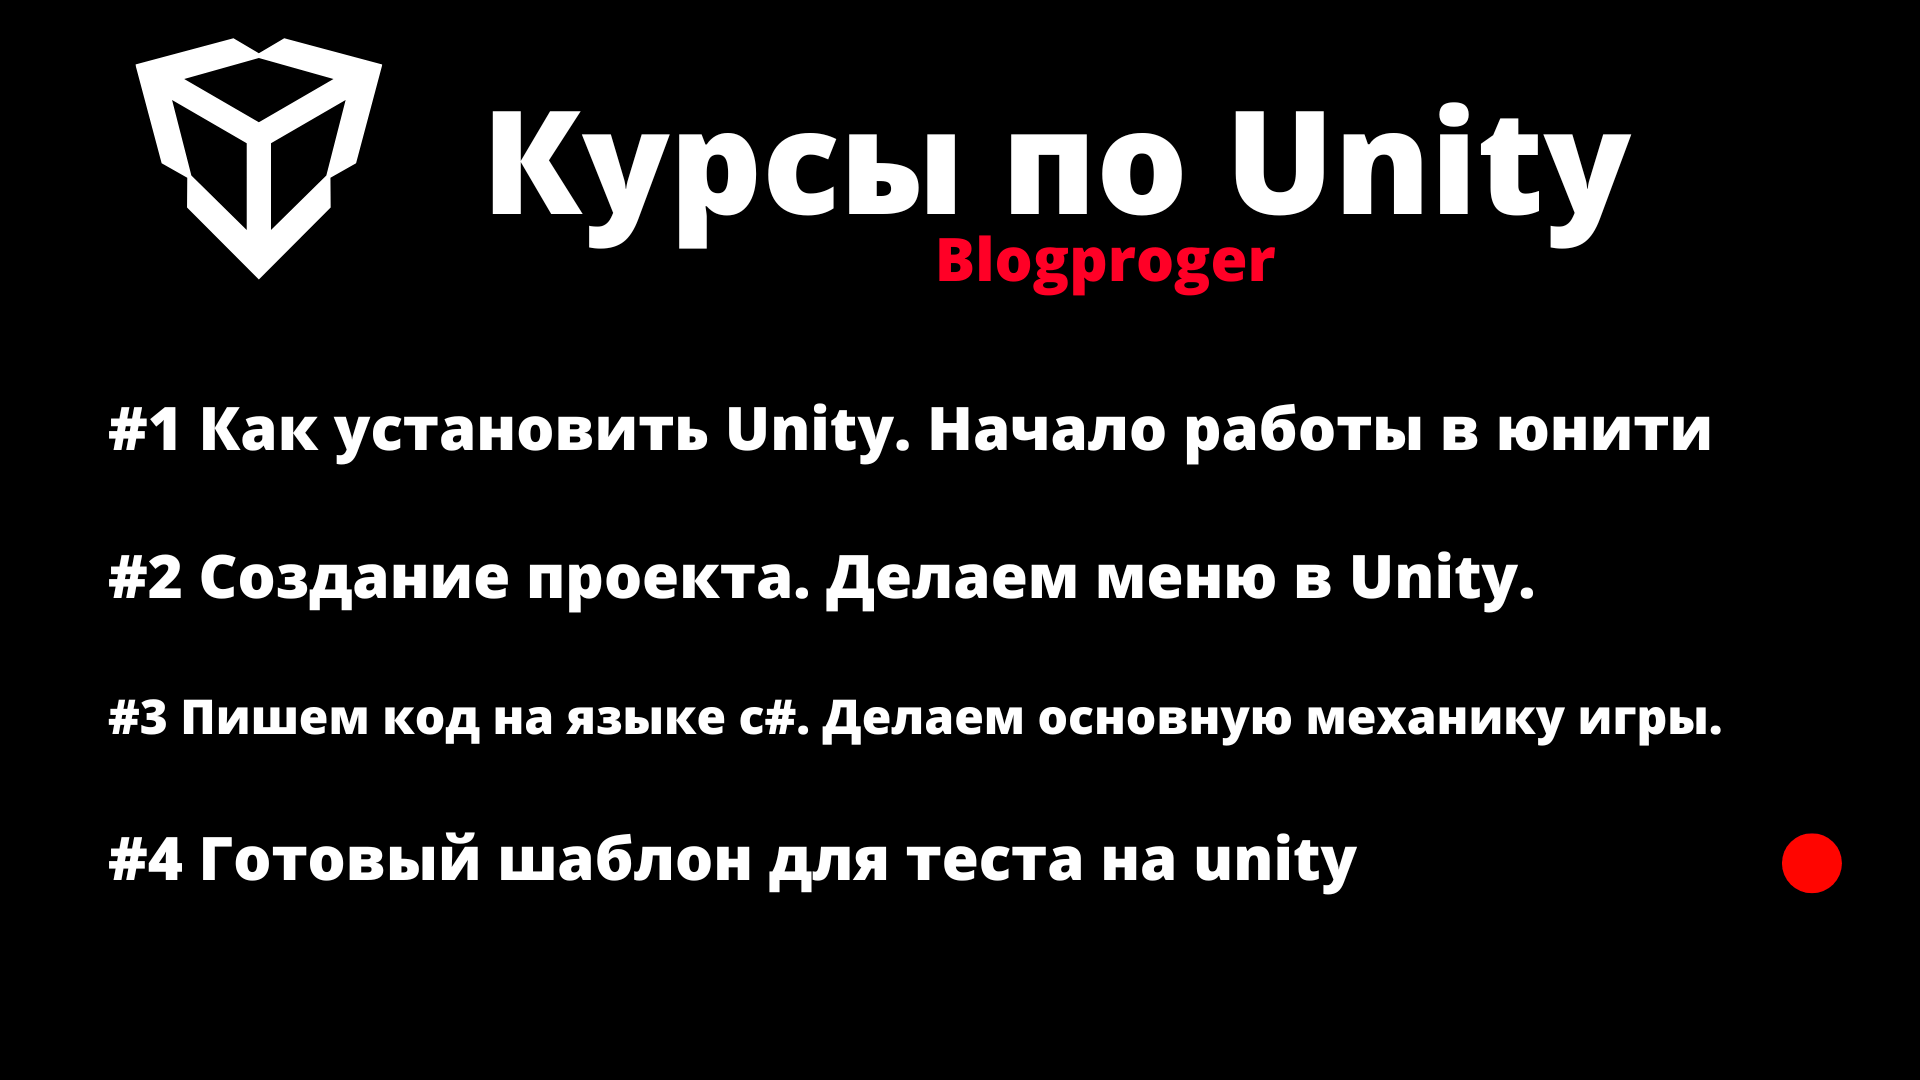 Делаем основную механику игры на unity